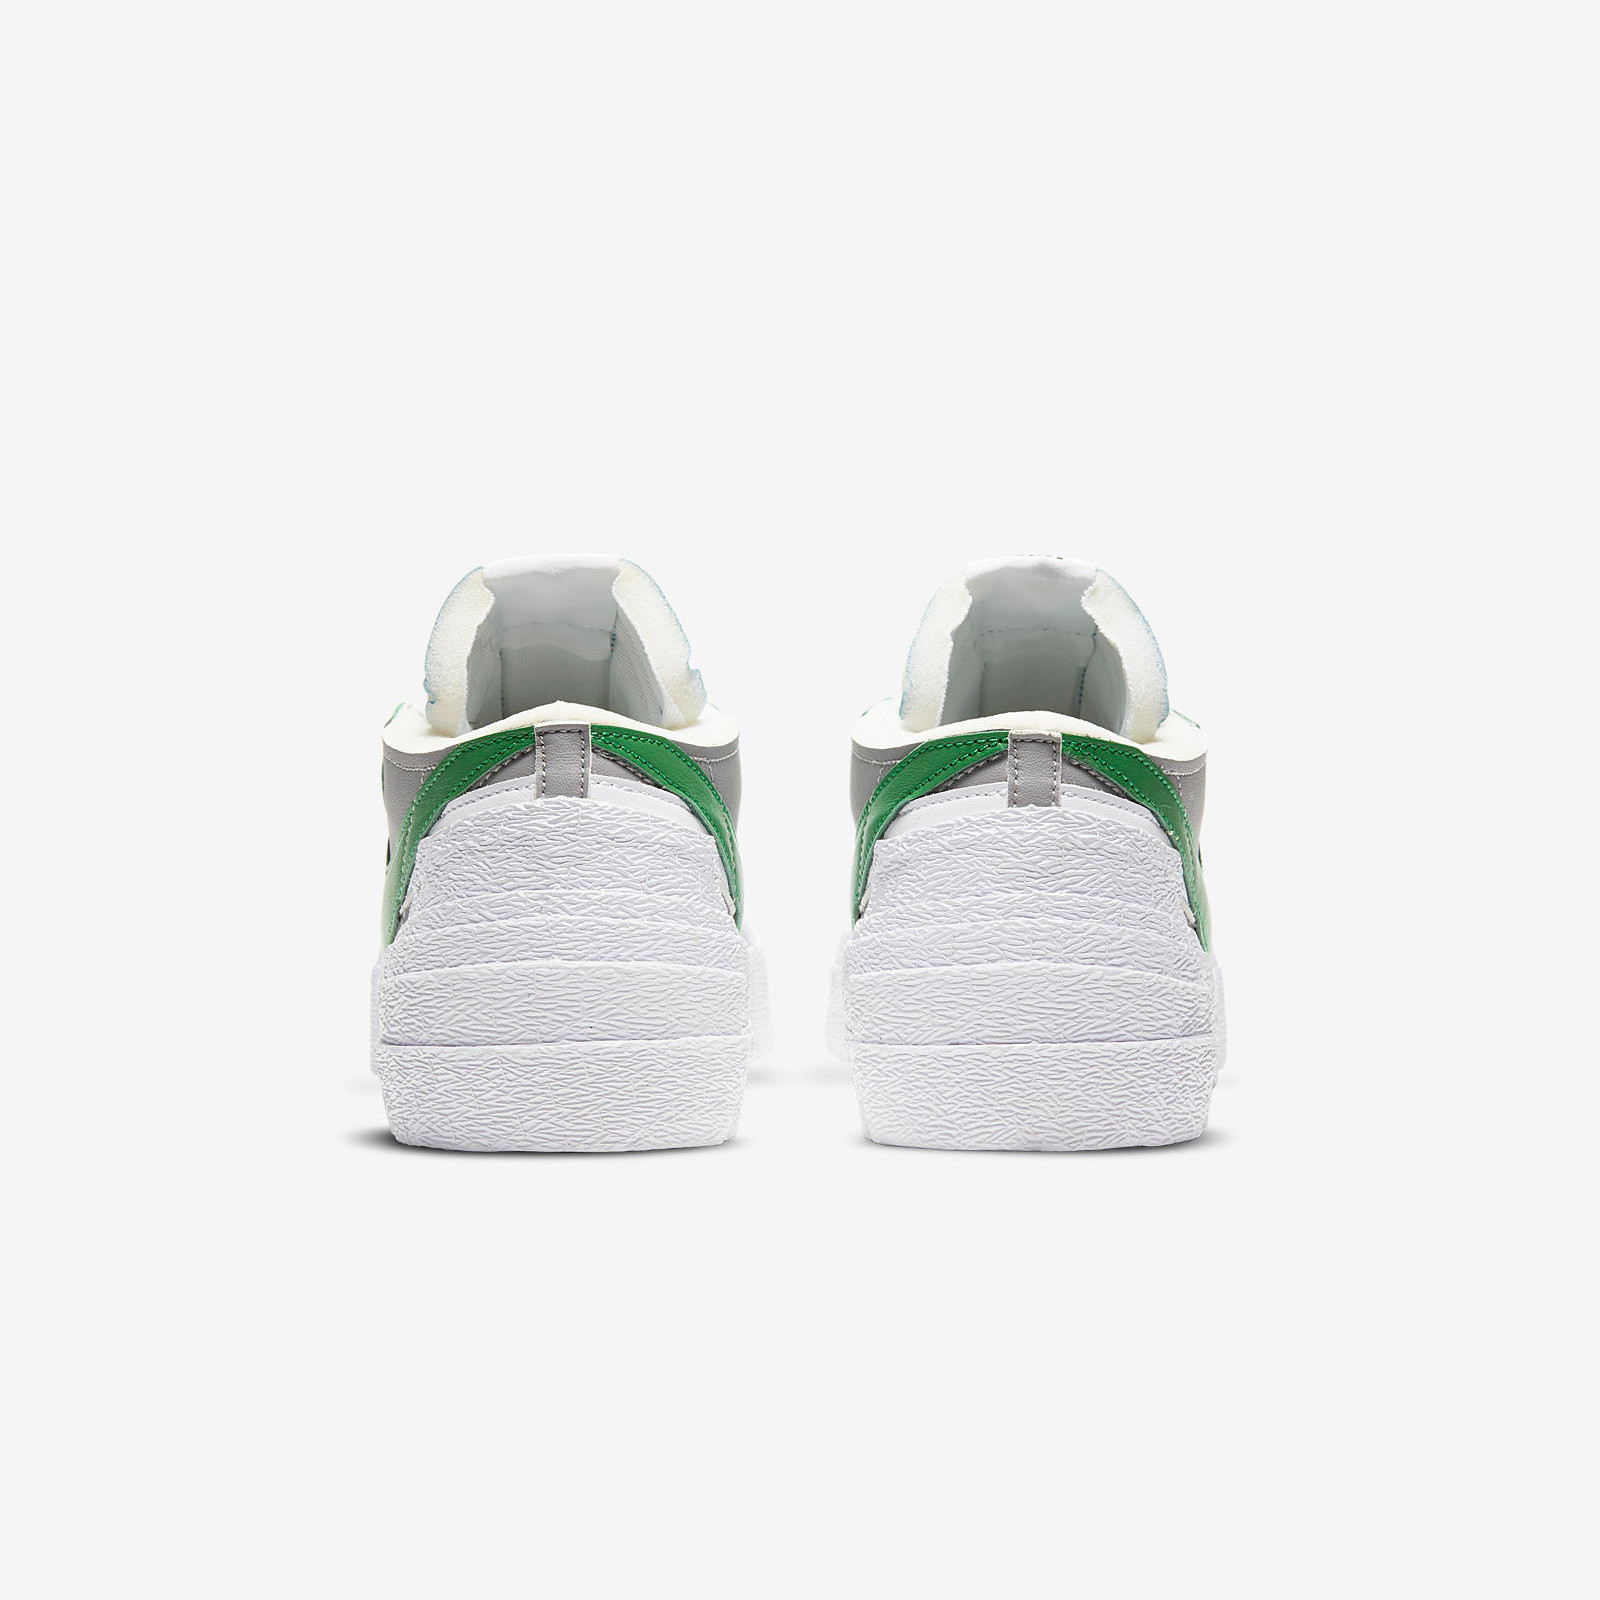 Nike x Sacai
Blazer Low
Classic Green